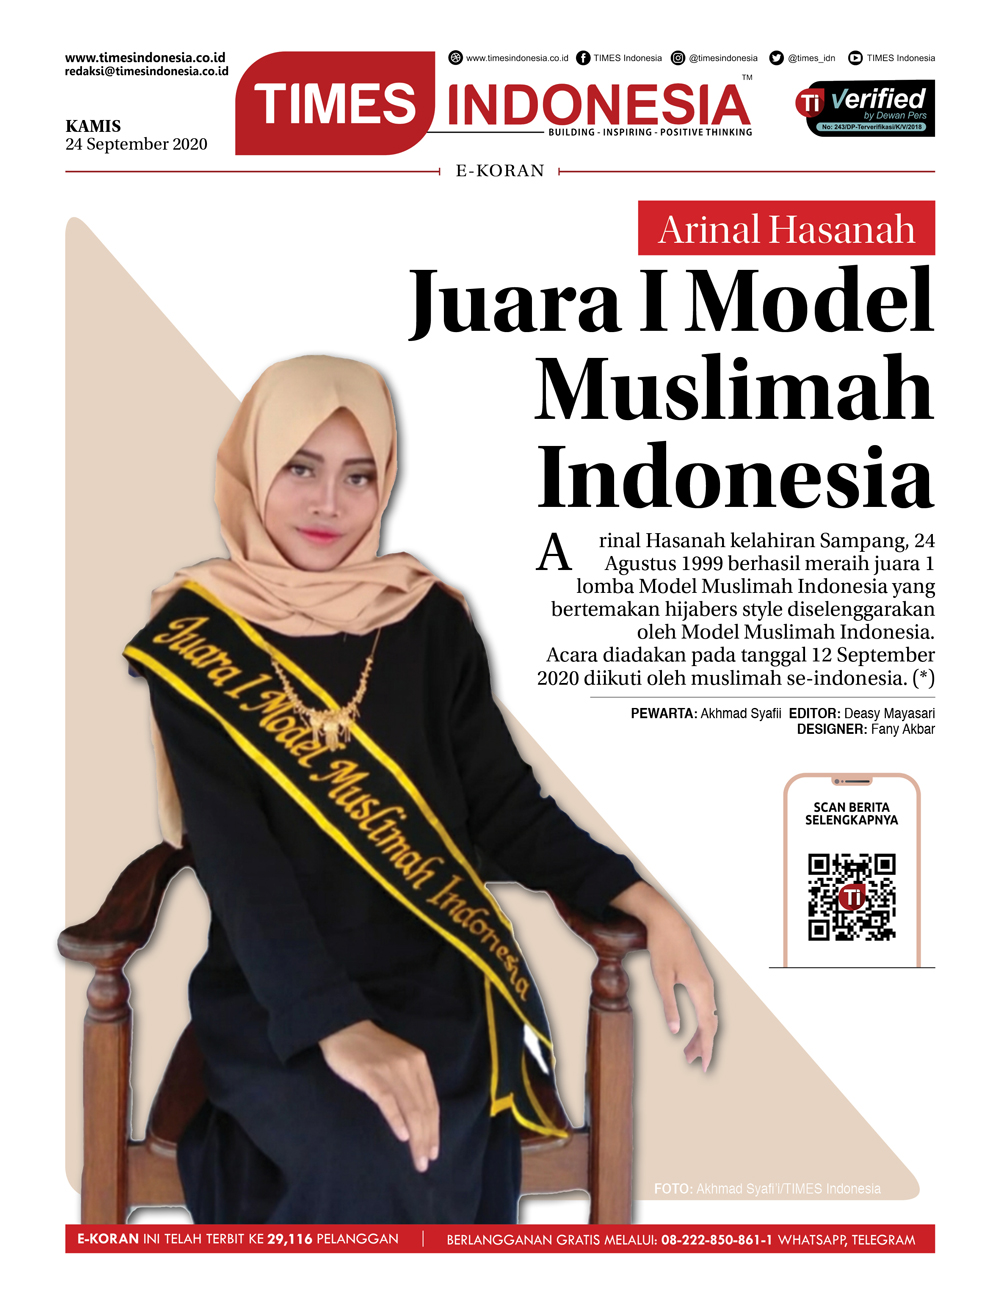 Edisi-Kamis-24-September-2020-Arinal-Hasanah-juara-model-muslimah-indonesia.jpg